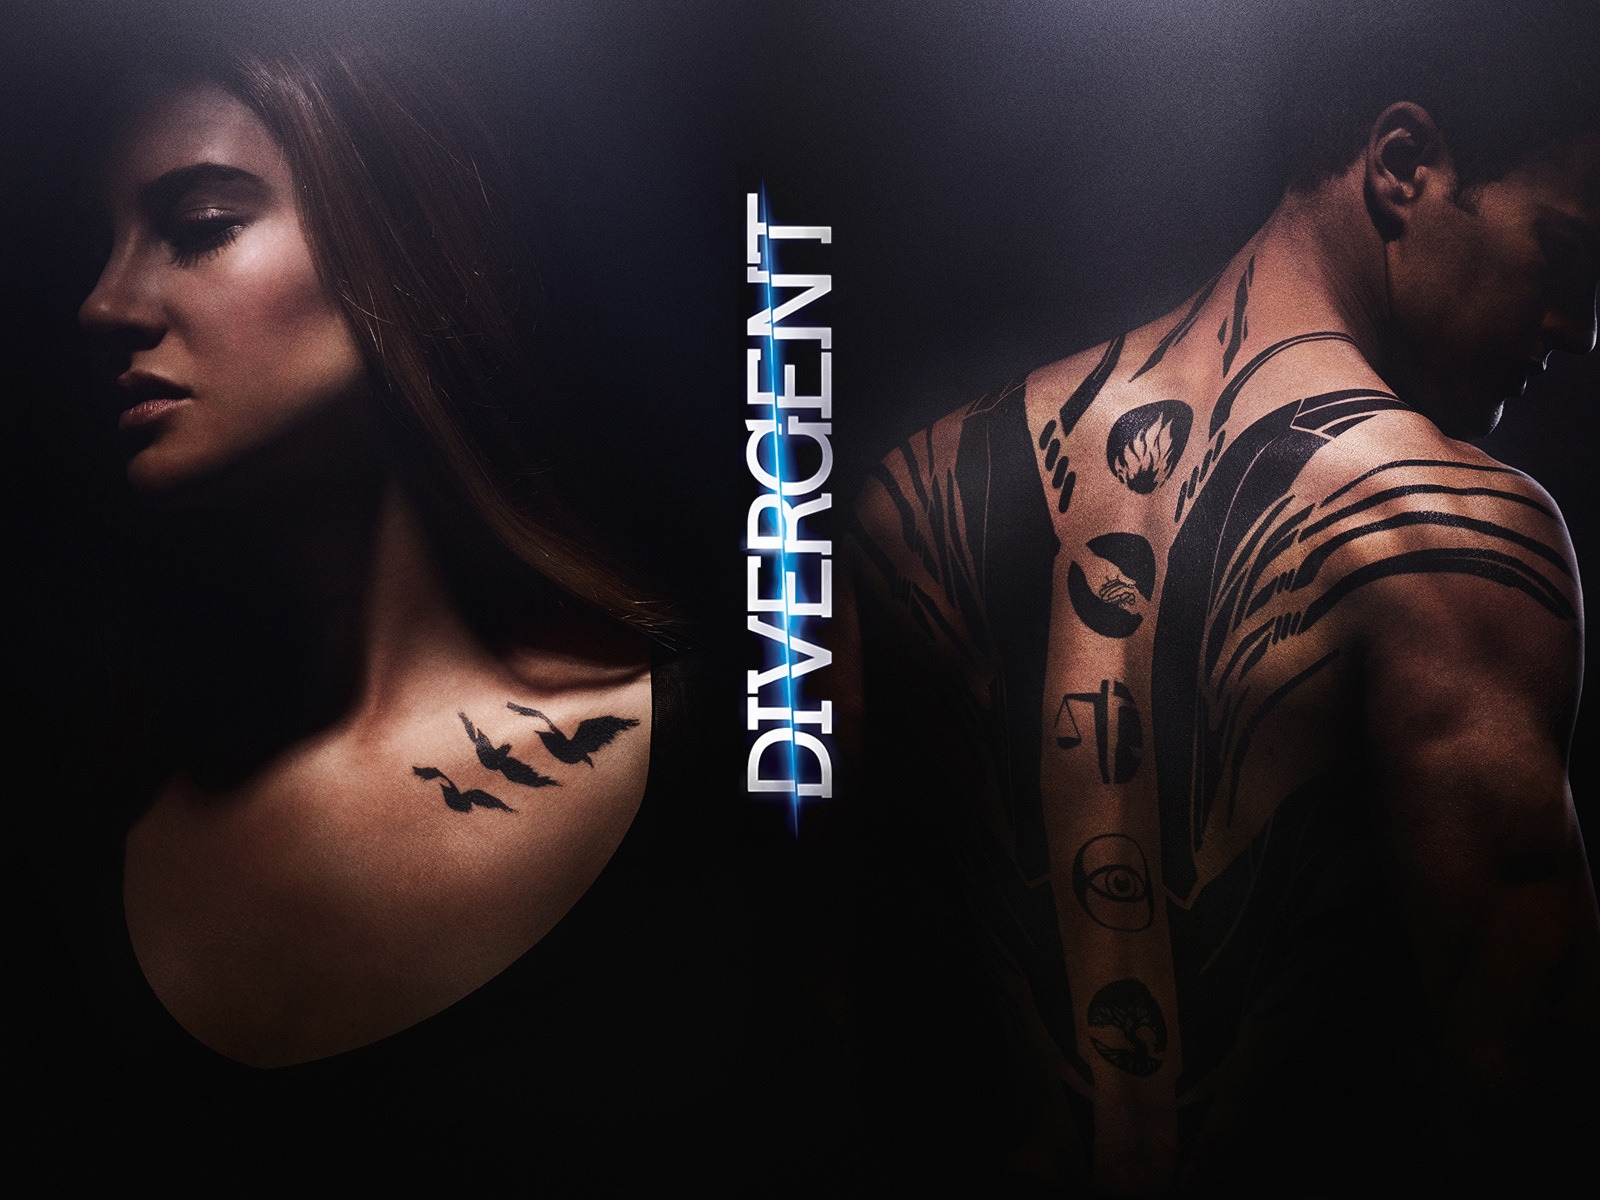 Divergent Movie for 1600 x 1200 resolution